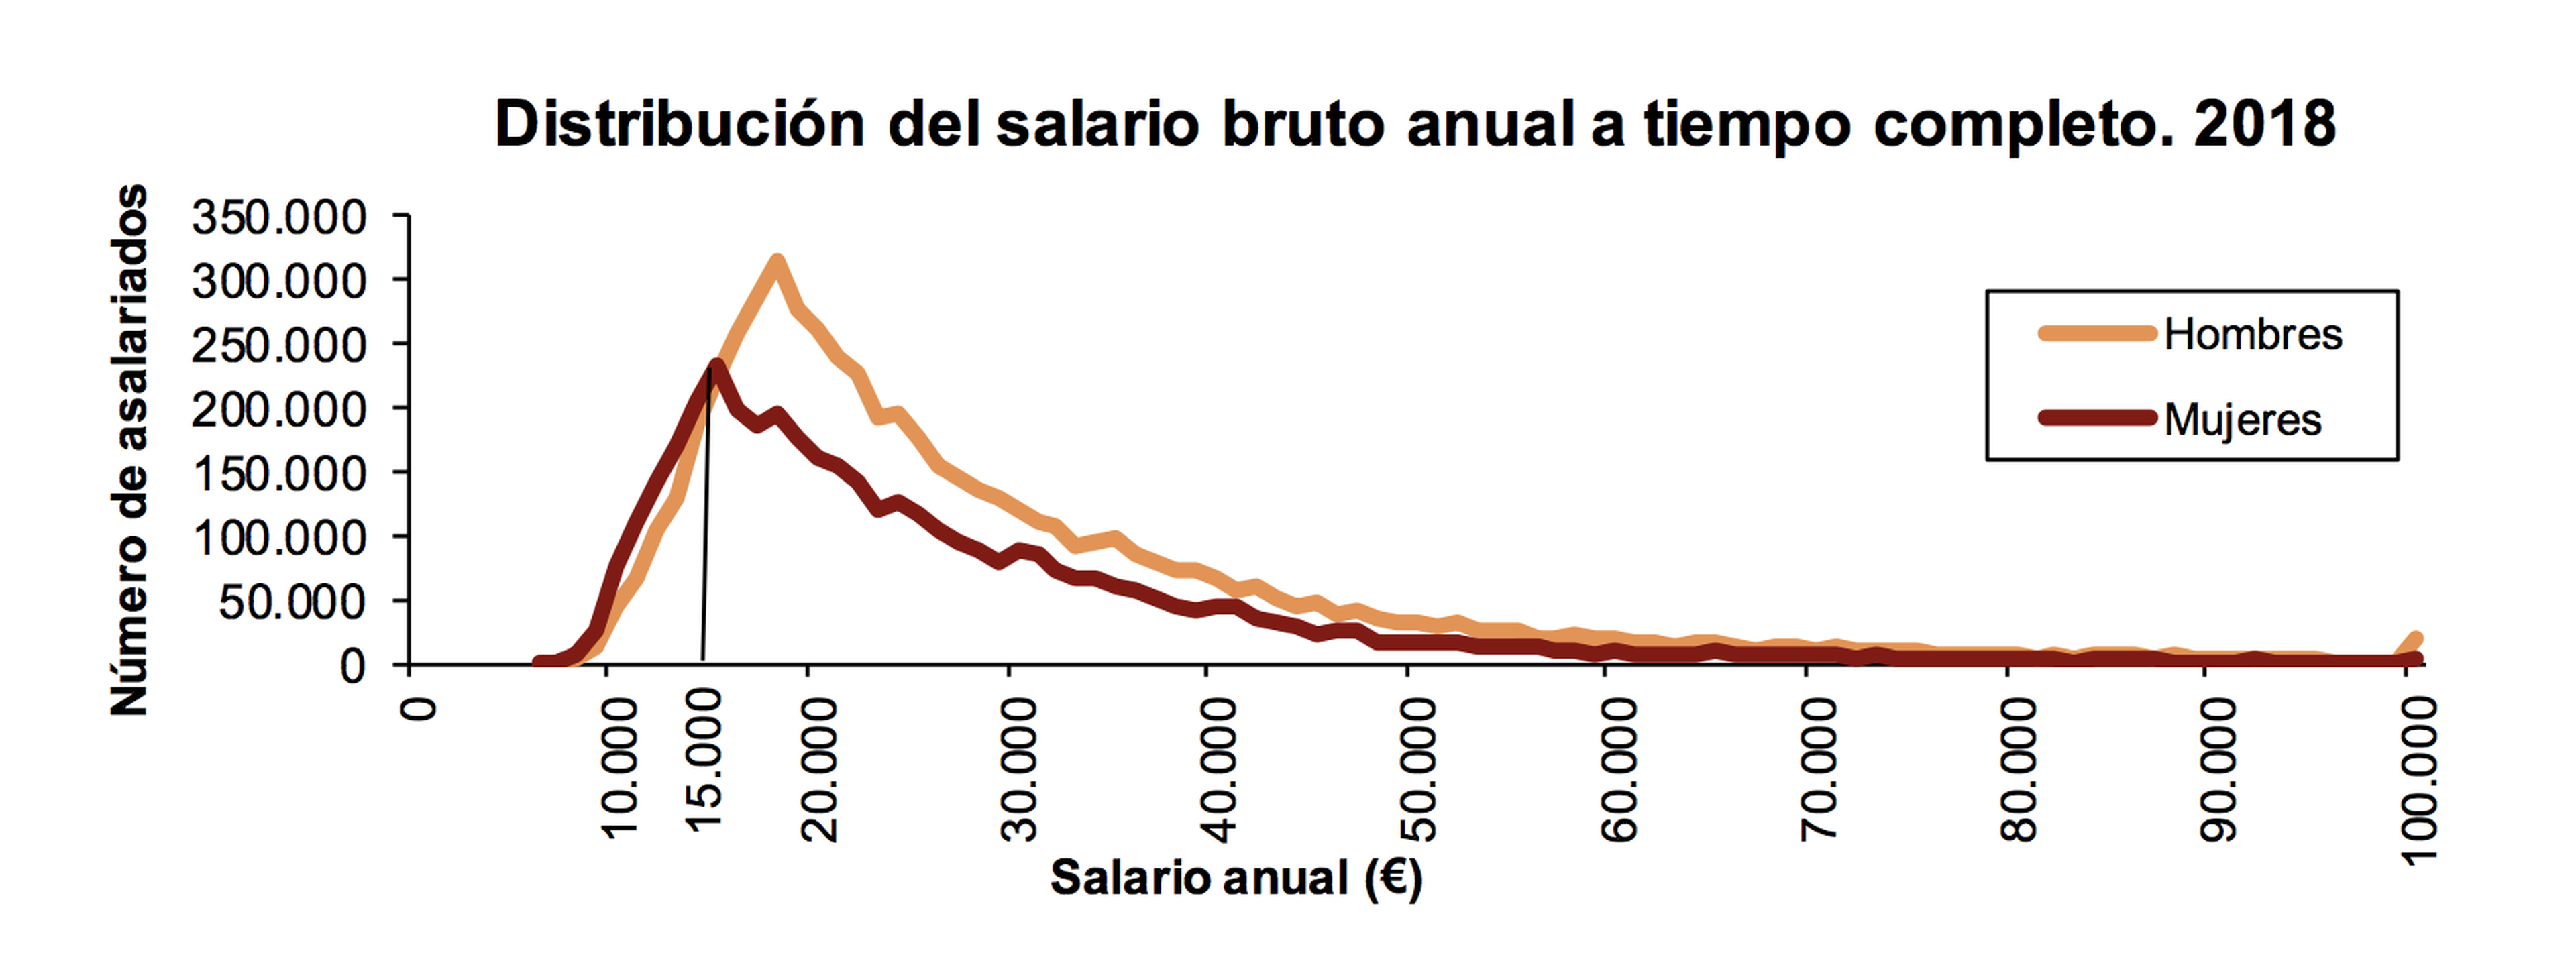 Salarios brutos anuales por sexo en España